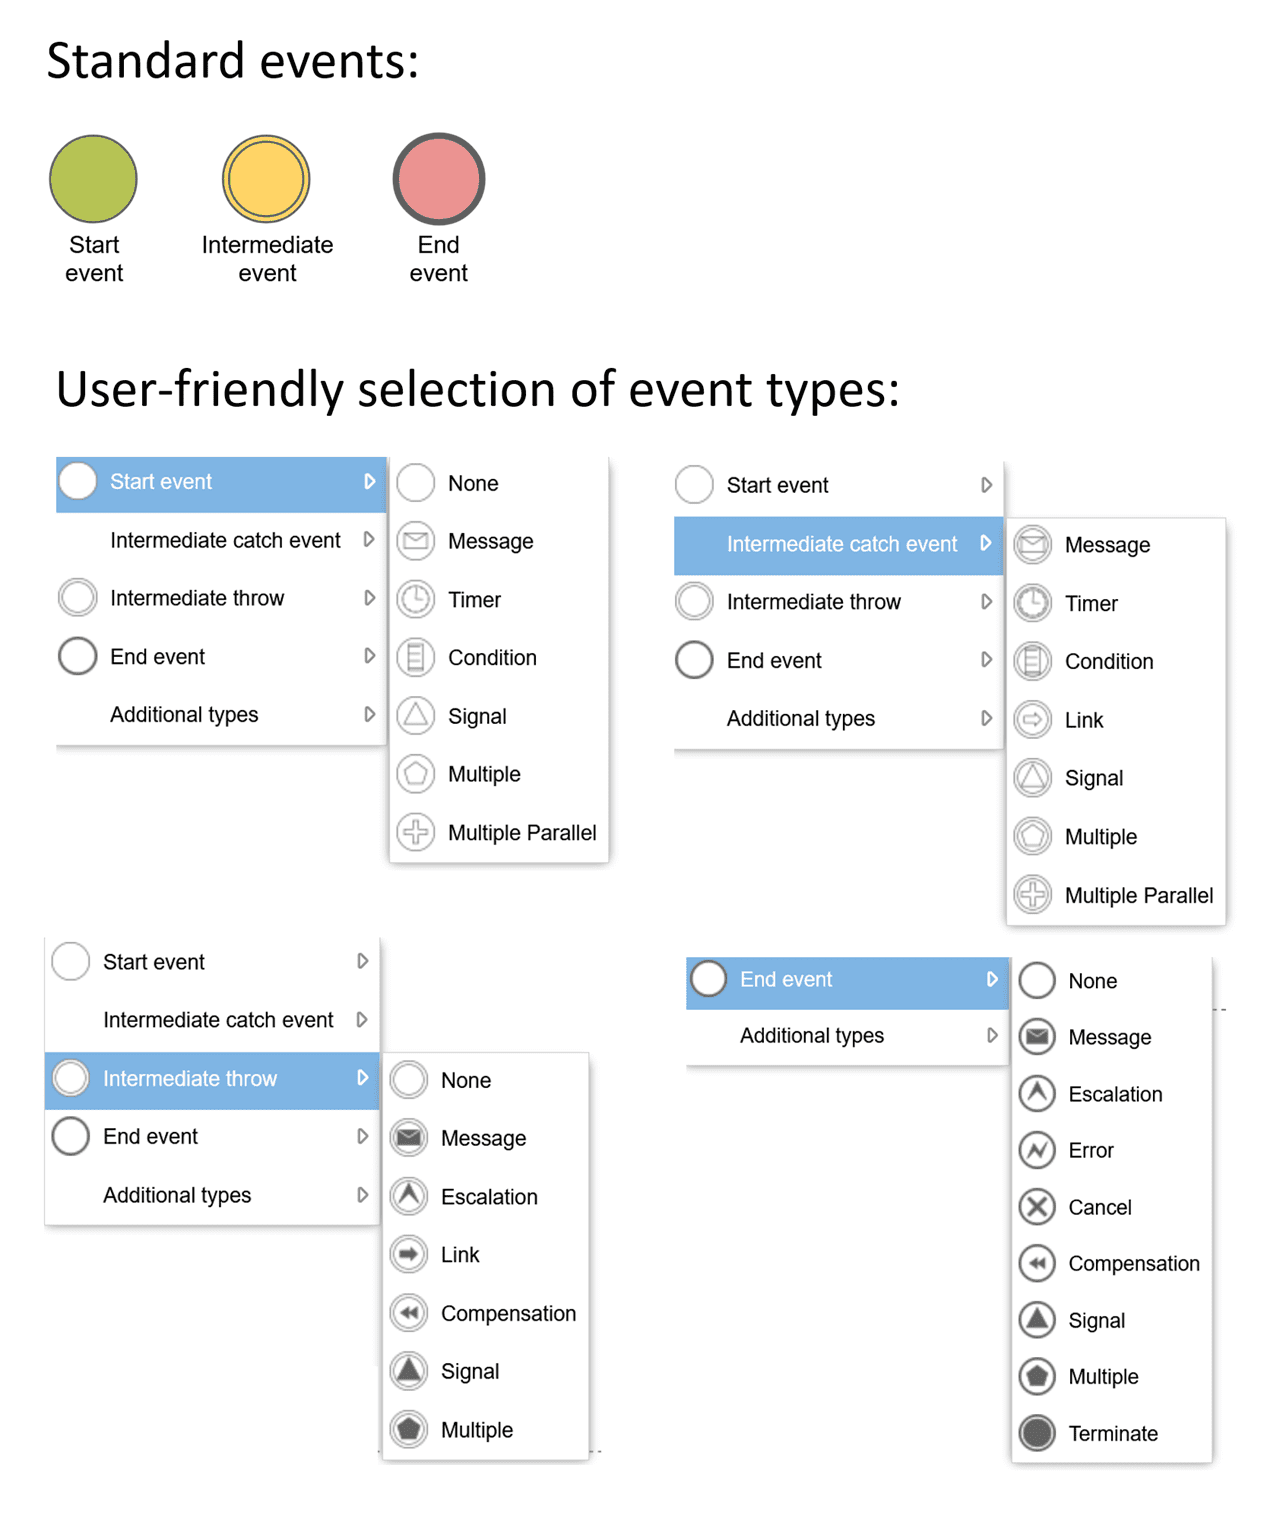 bpmn-events-tool-en